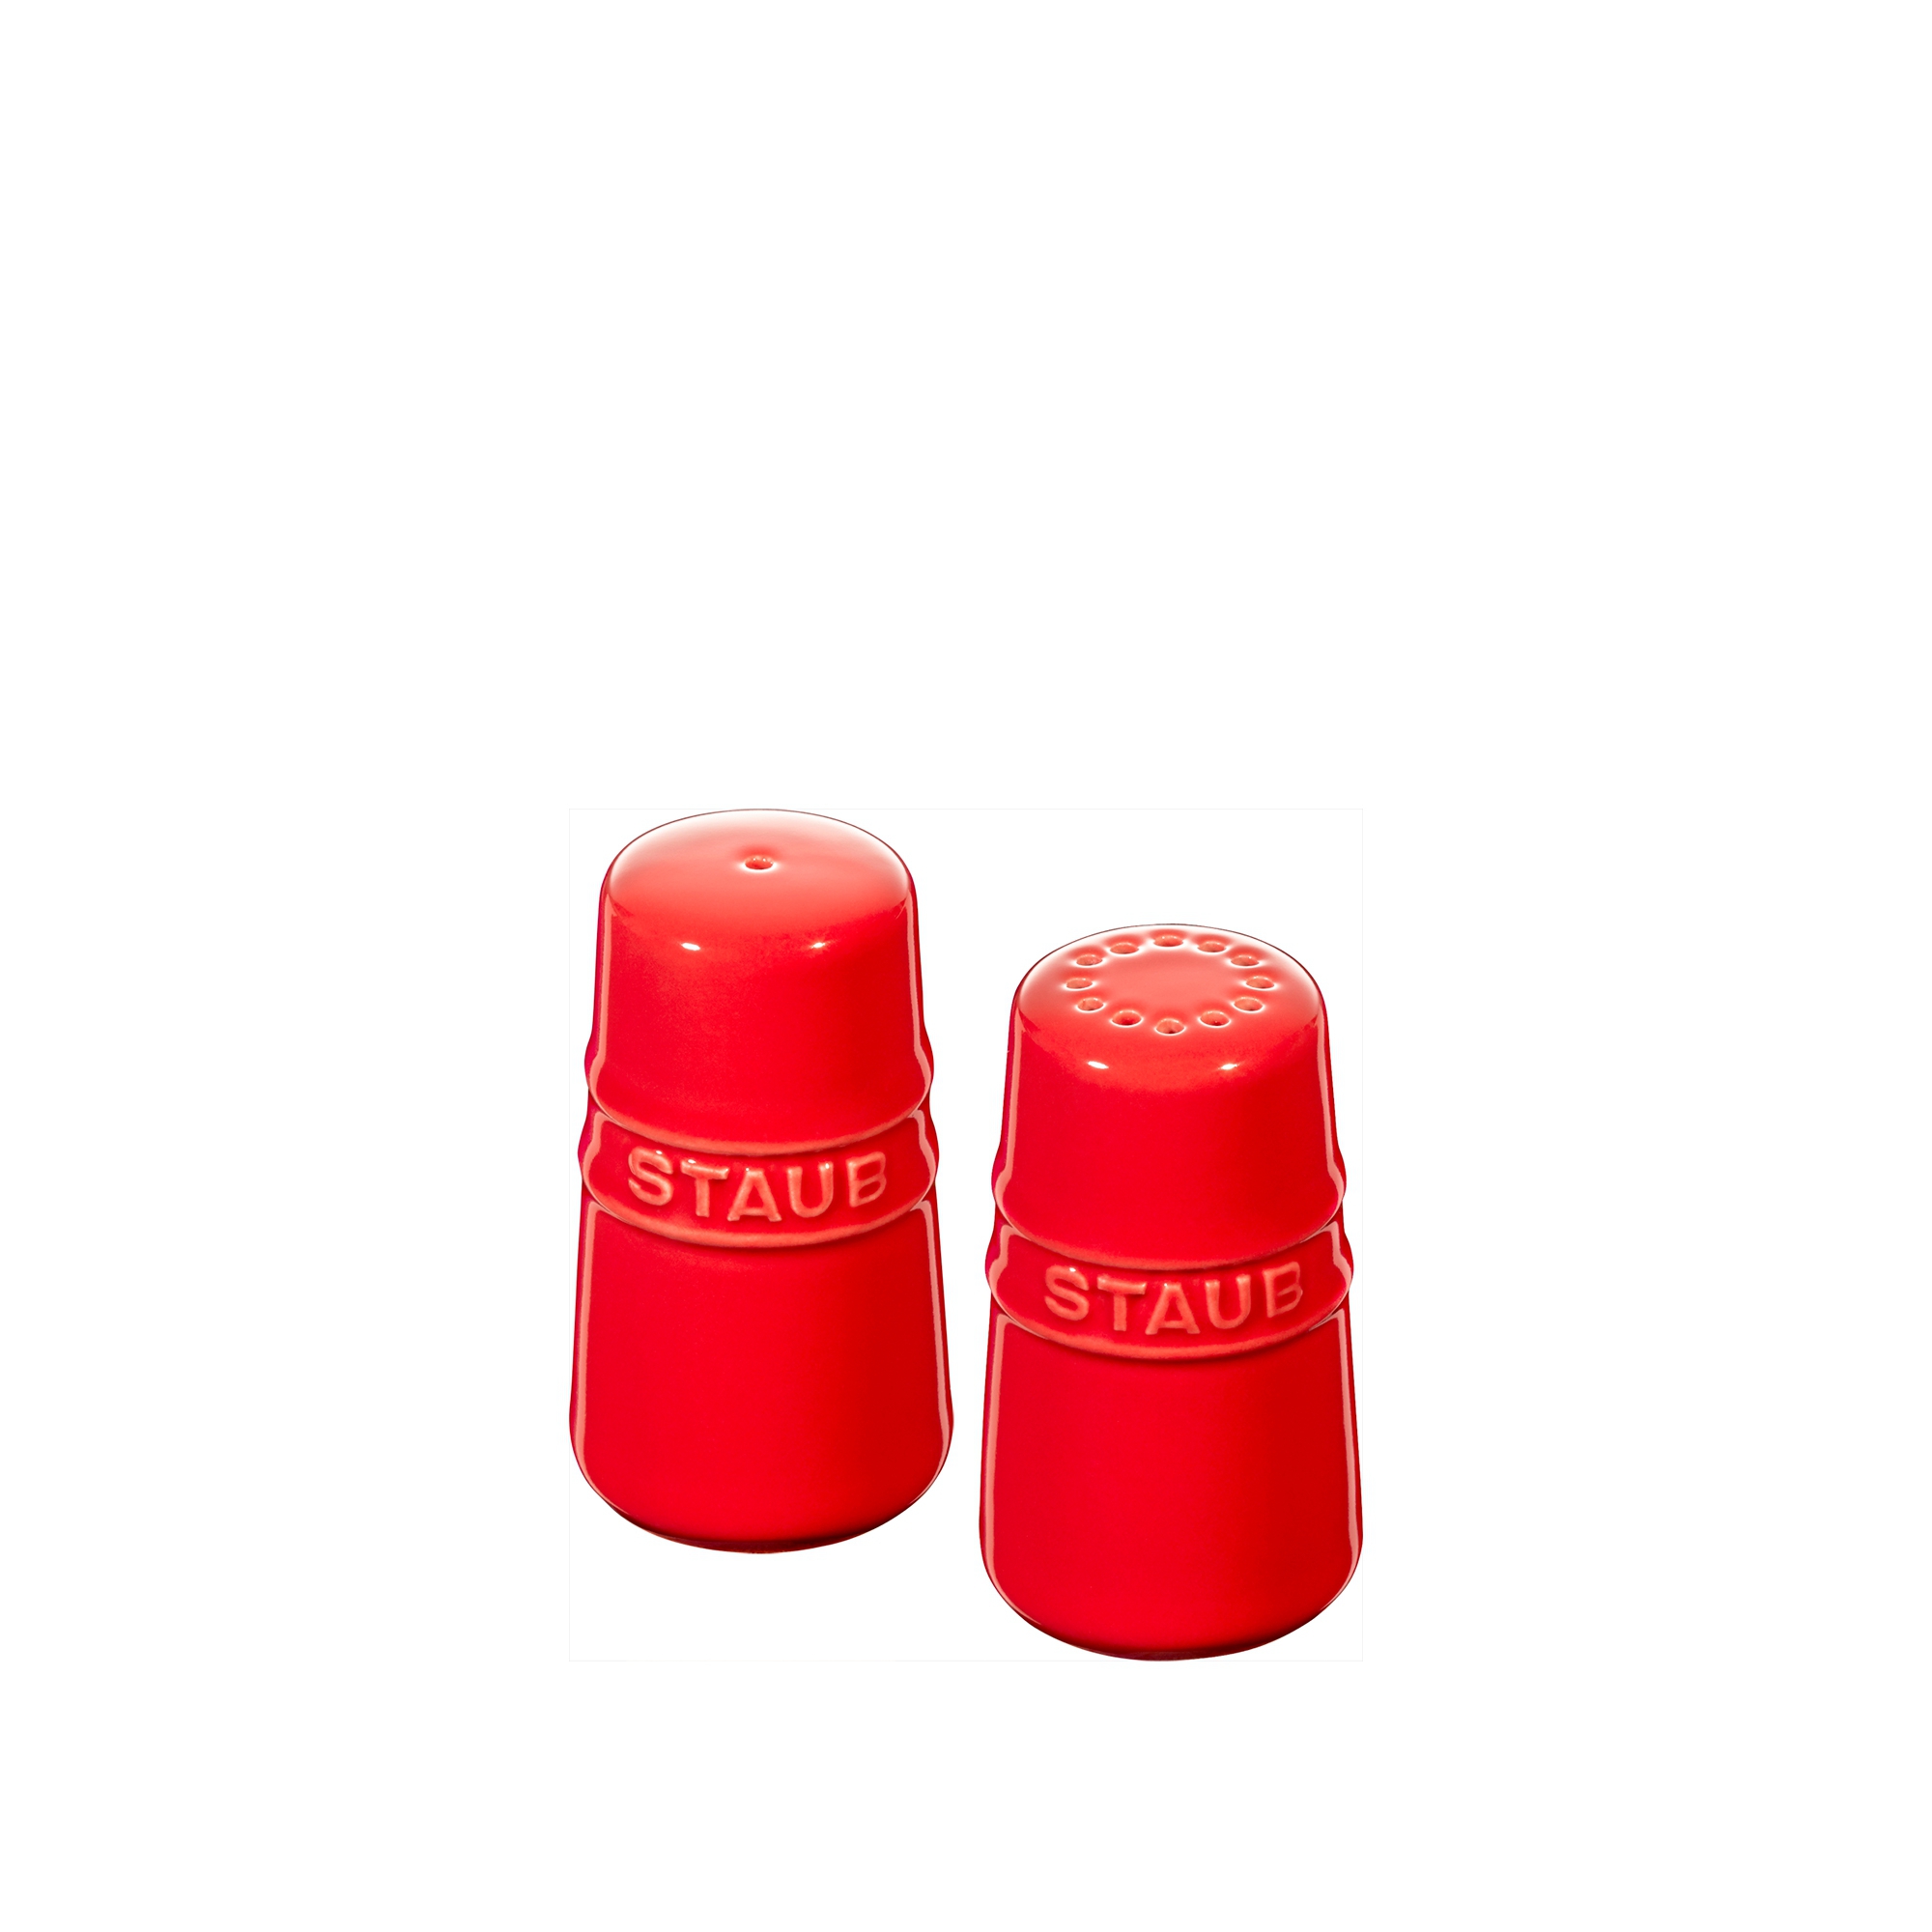 Staub - Ceramique salt & pepper shaker - set of 2 pieces